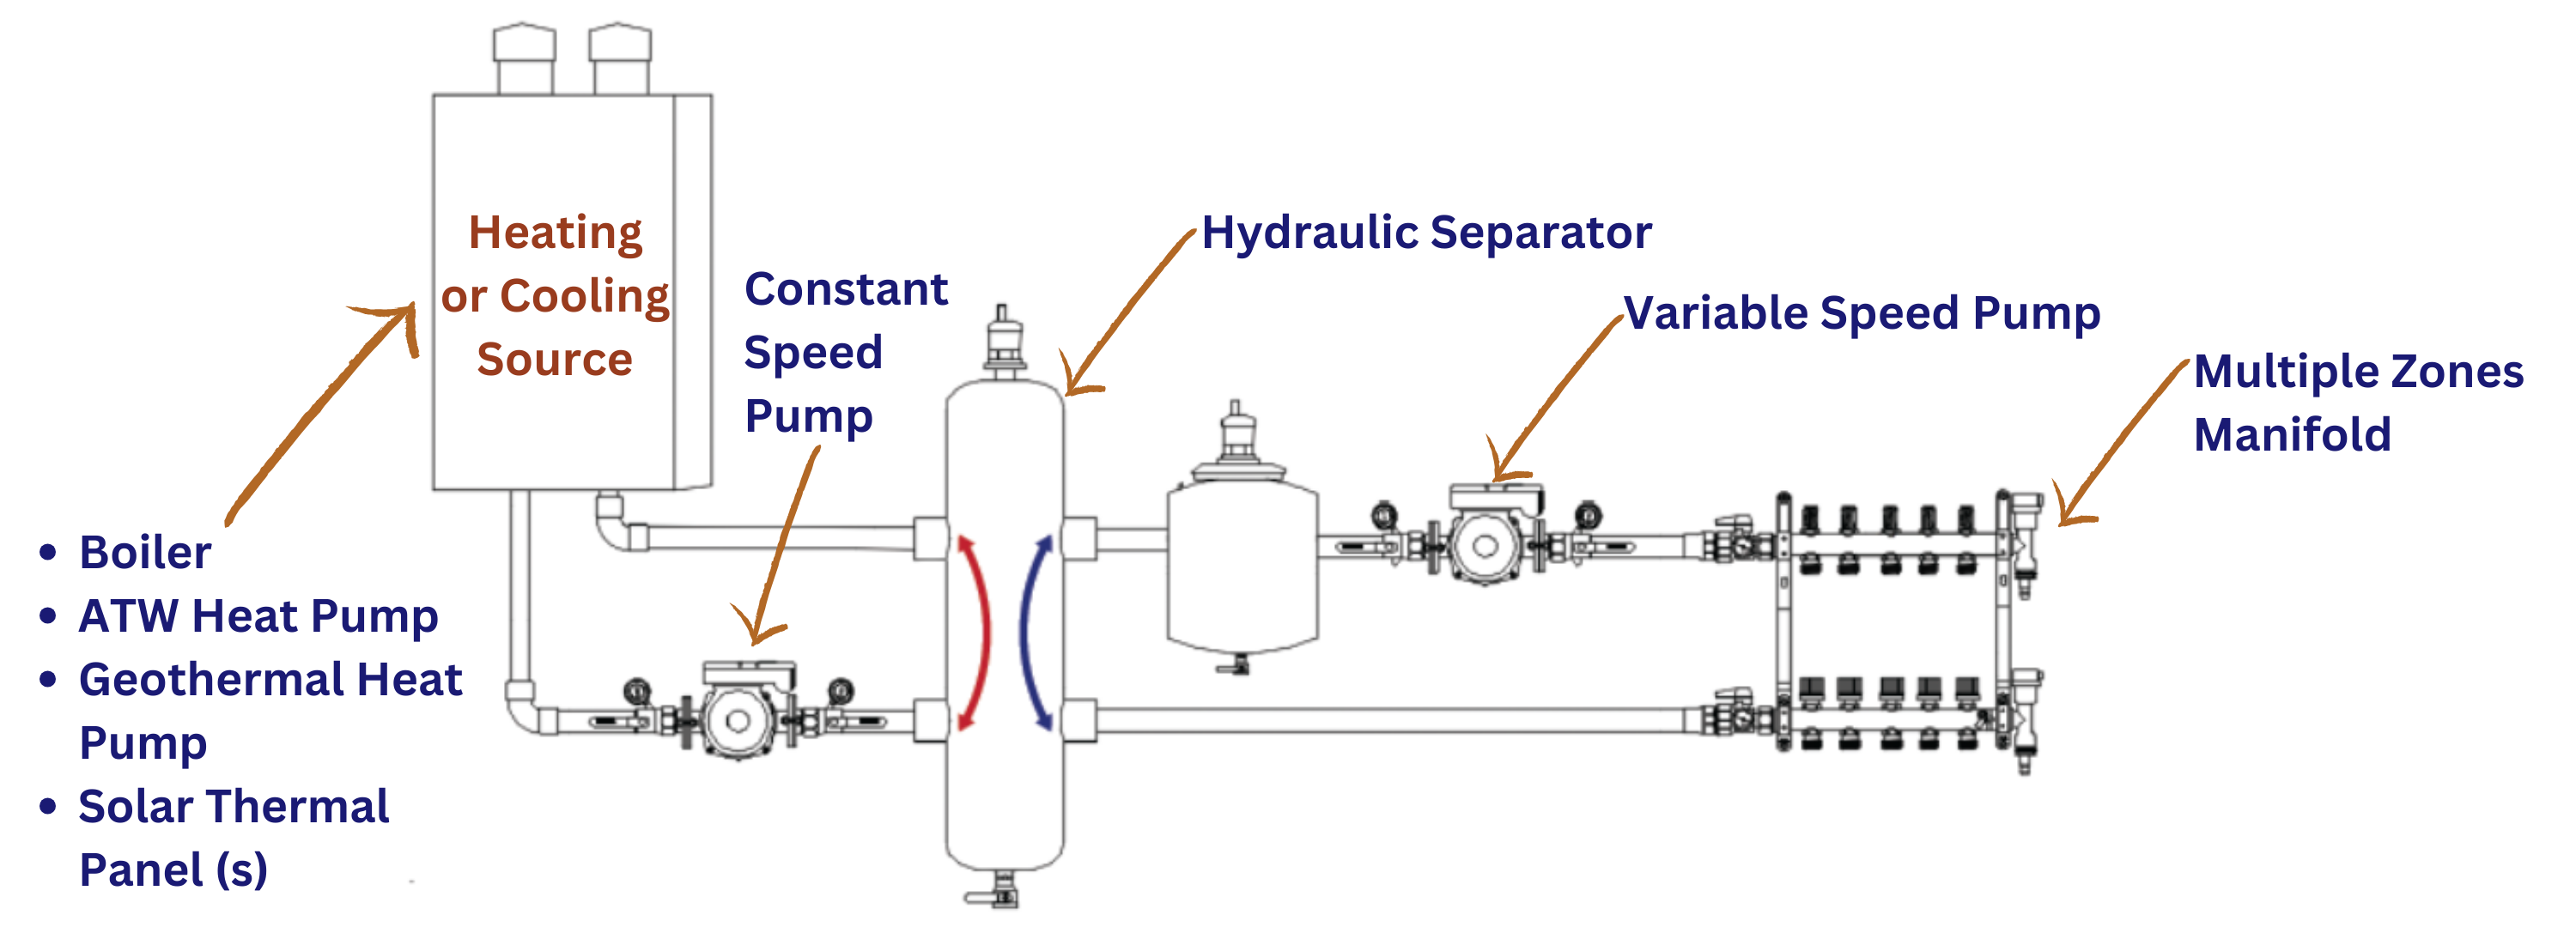 Hydraulic Separator